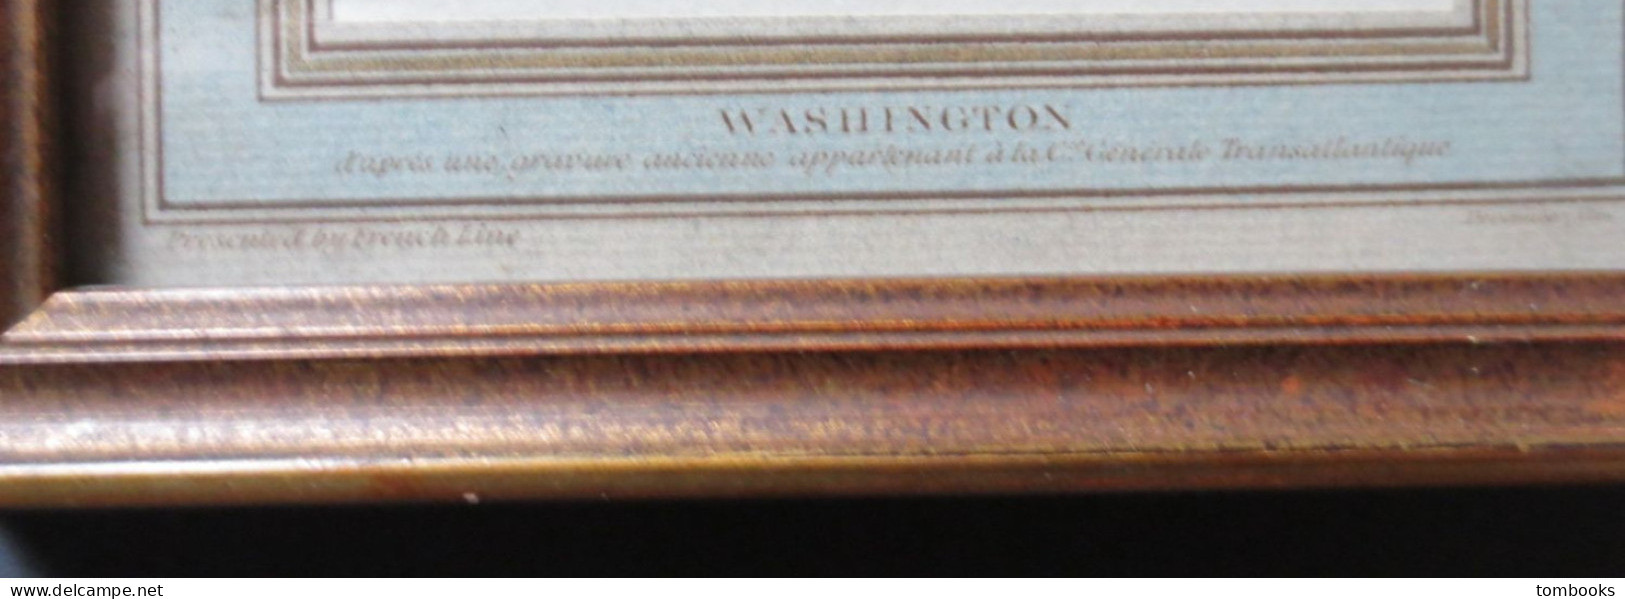 French Line - George Washington - Gravure Pour Paquebot " SS Washington " D'après Gravure Ancienne CGT - TBE - - Maritime Decoration